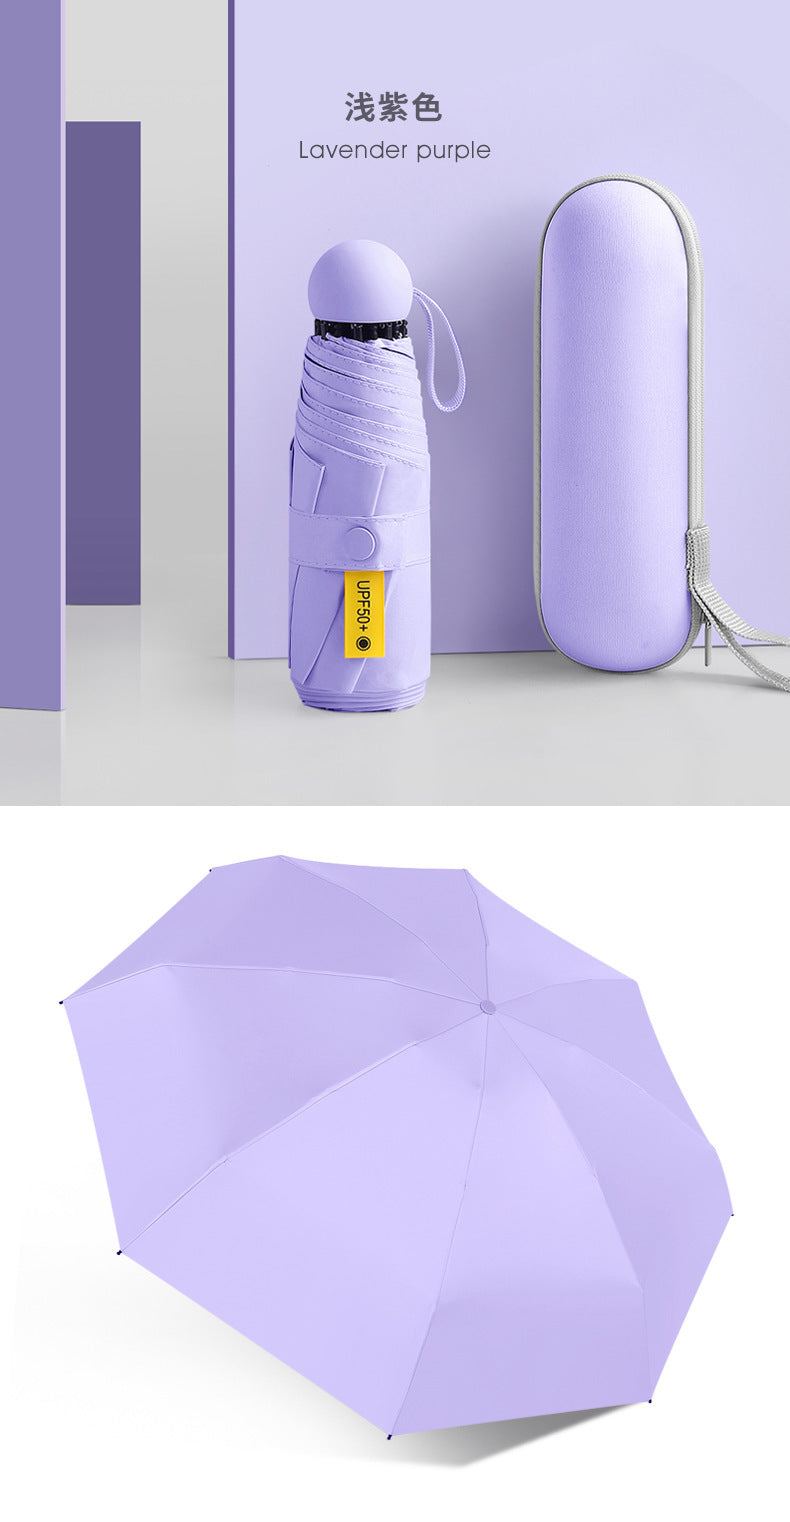 Mini umbrella with Capsule case, 5 folds, 8 ribs